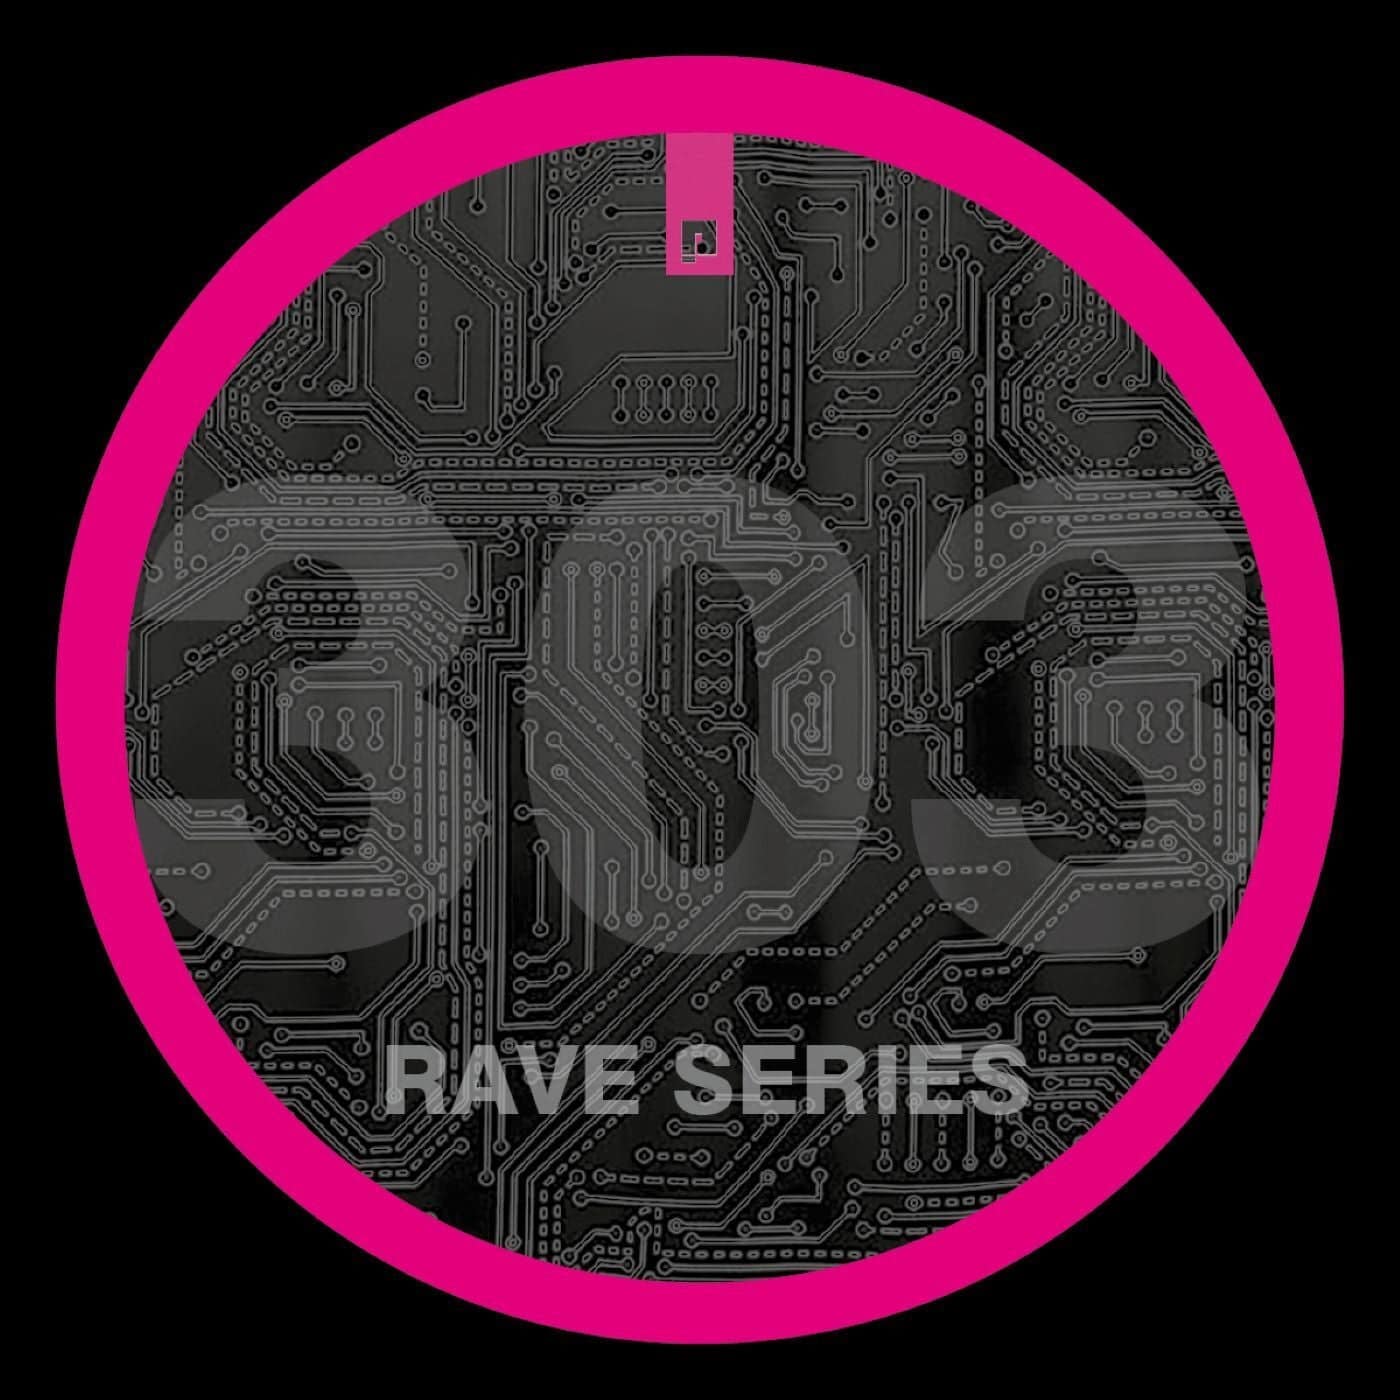 Download Toni Alvarez - 303 Rave Series 101 on Electrobuzz